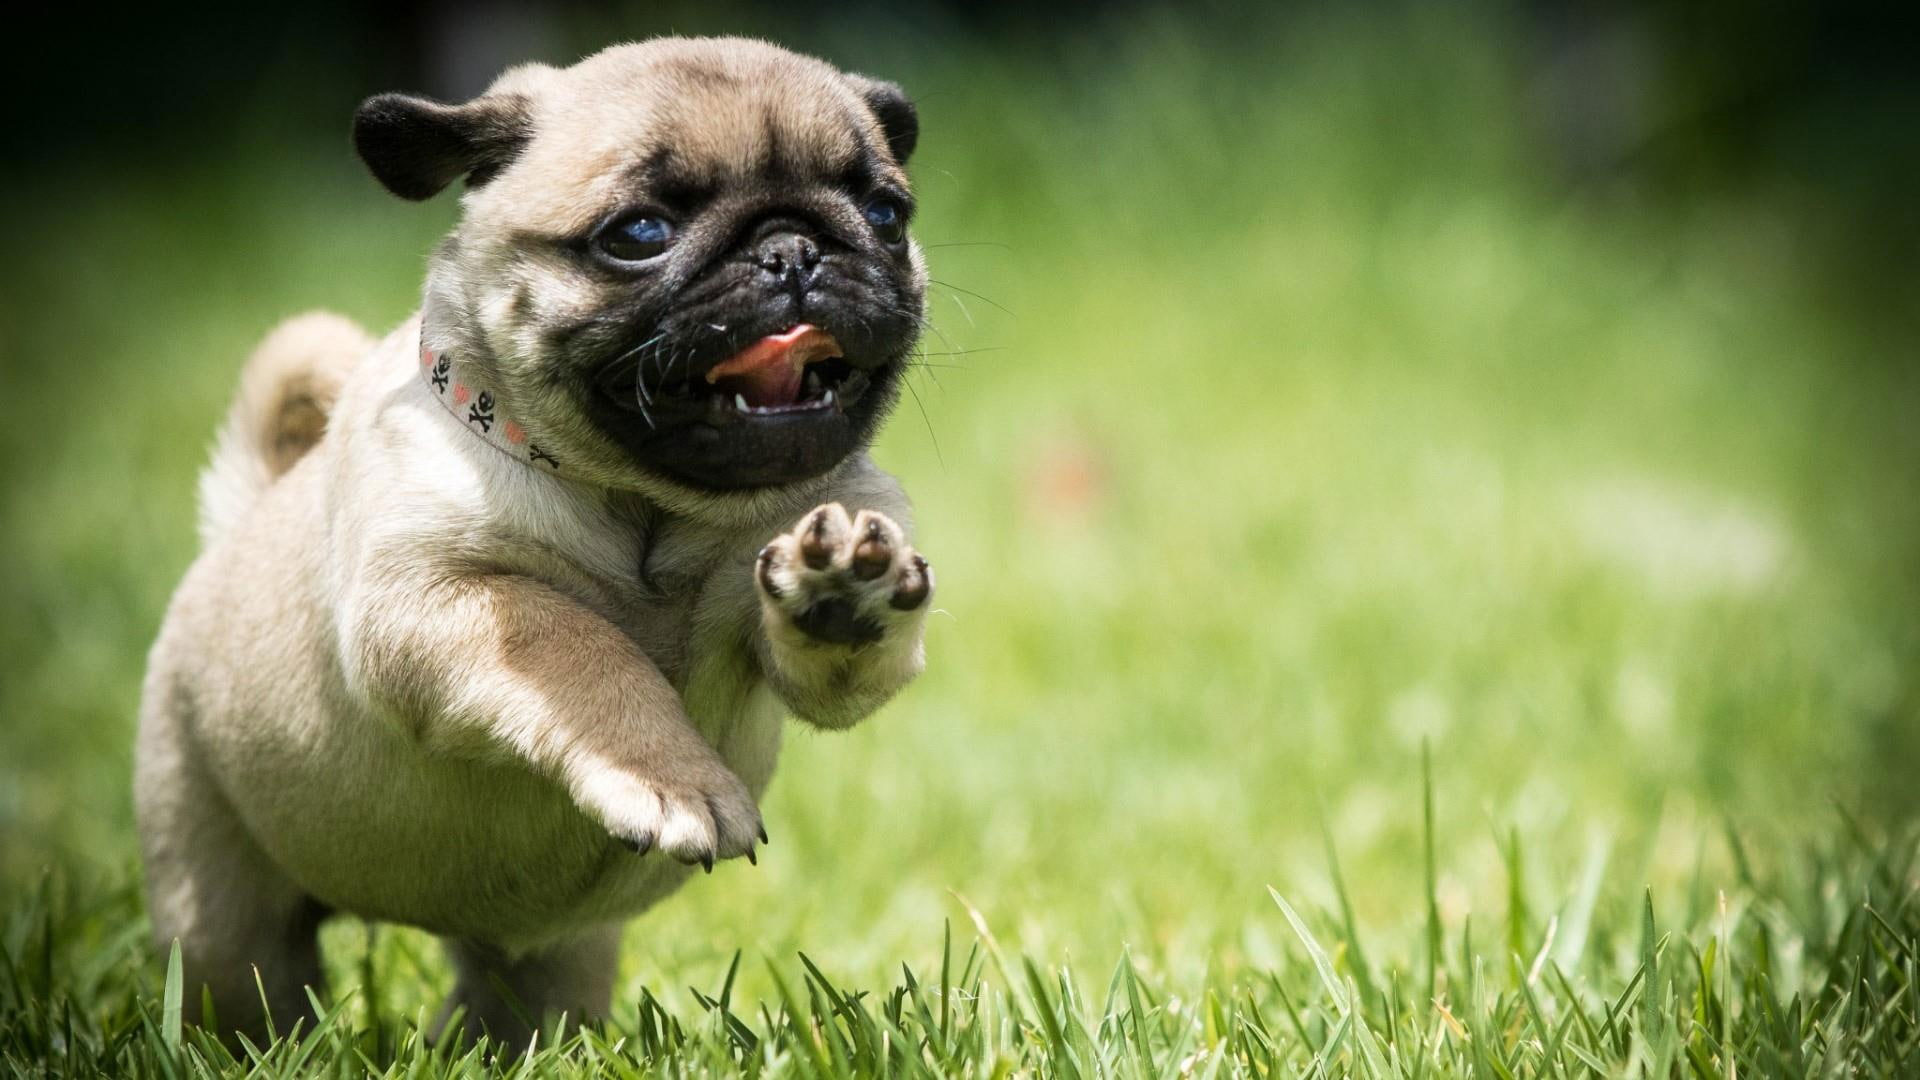 Wallpaper Pug, Dog, Field, Run, Puppy, Grass, Cute, Mops